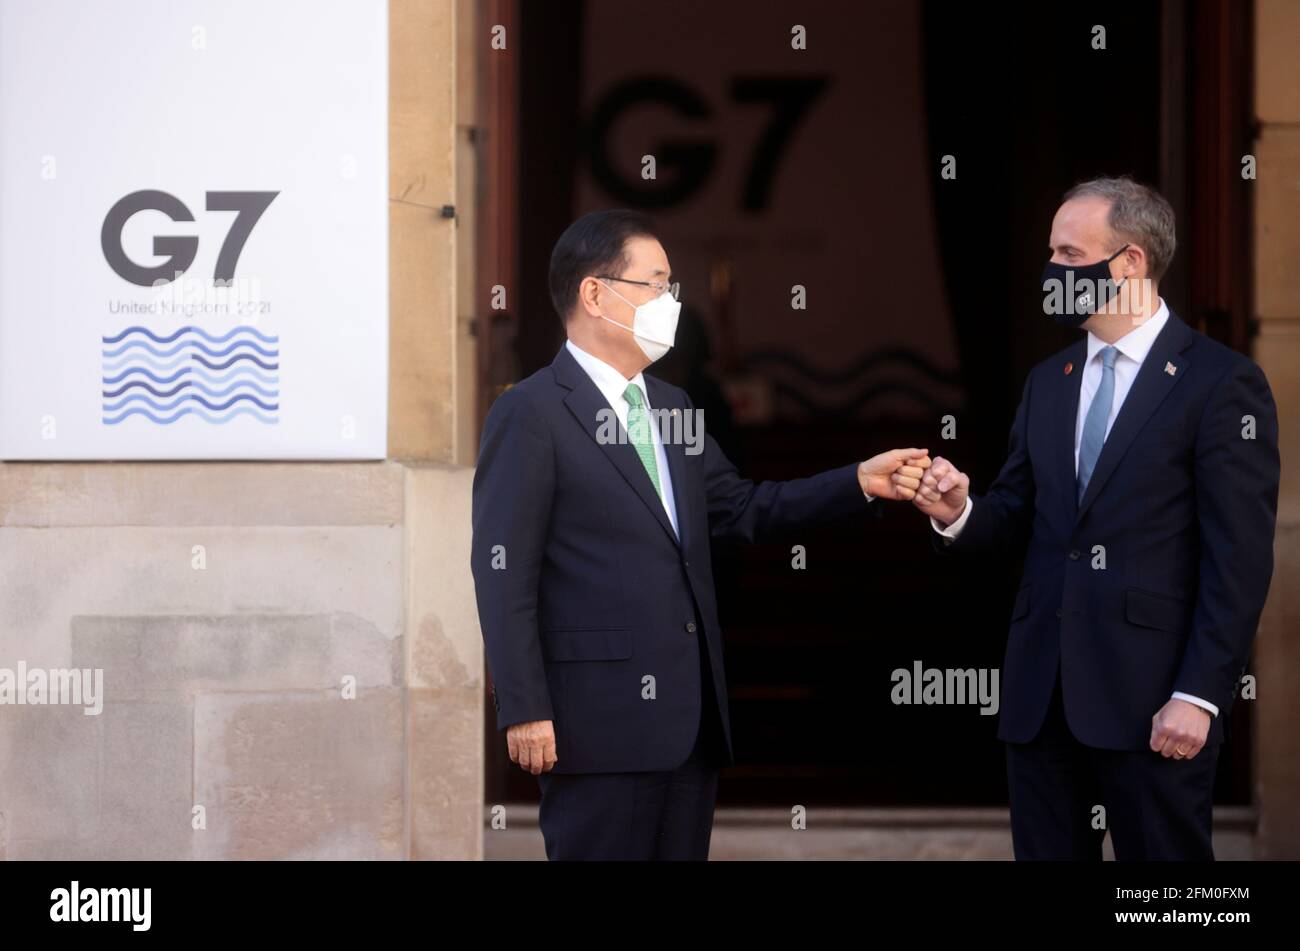 Il segretario agli Esteri Dominic Raab (destra) si è pugnalato contro il ministro degli Affari Esteri della Corea del Sud, Chung EUI-yong (sinistra), arrivando a Lancaster House, Londra, durante la riunione dei ministri degli Esteri e dello sviluppo del G7. Data immagine: Mercoledì 5 maggio 2021. Foto Stock